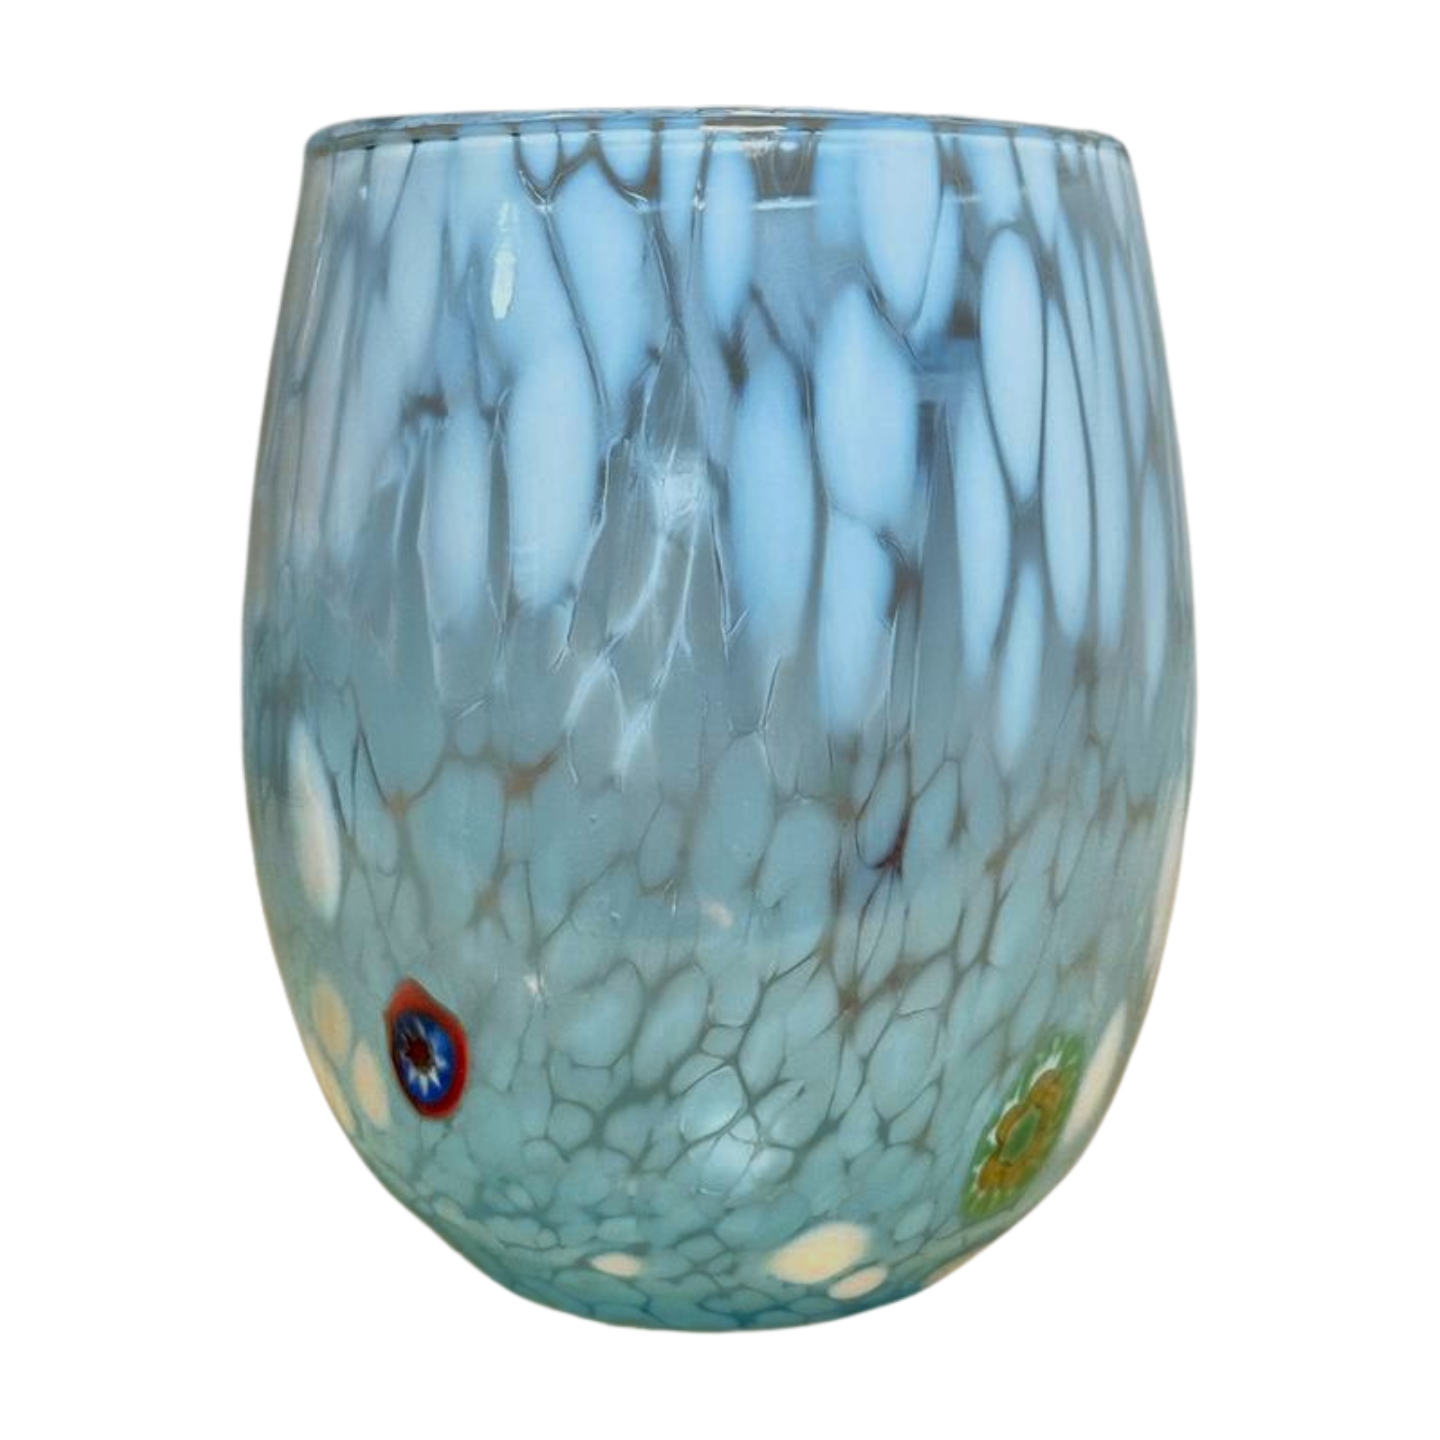 Stemless Murano Wine Glass, Two-Tone shown in aqua.